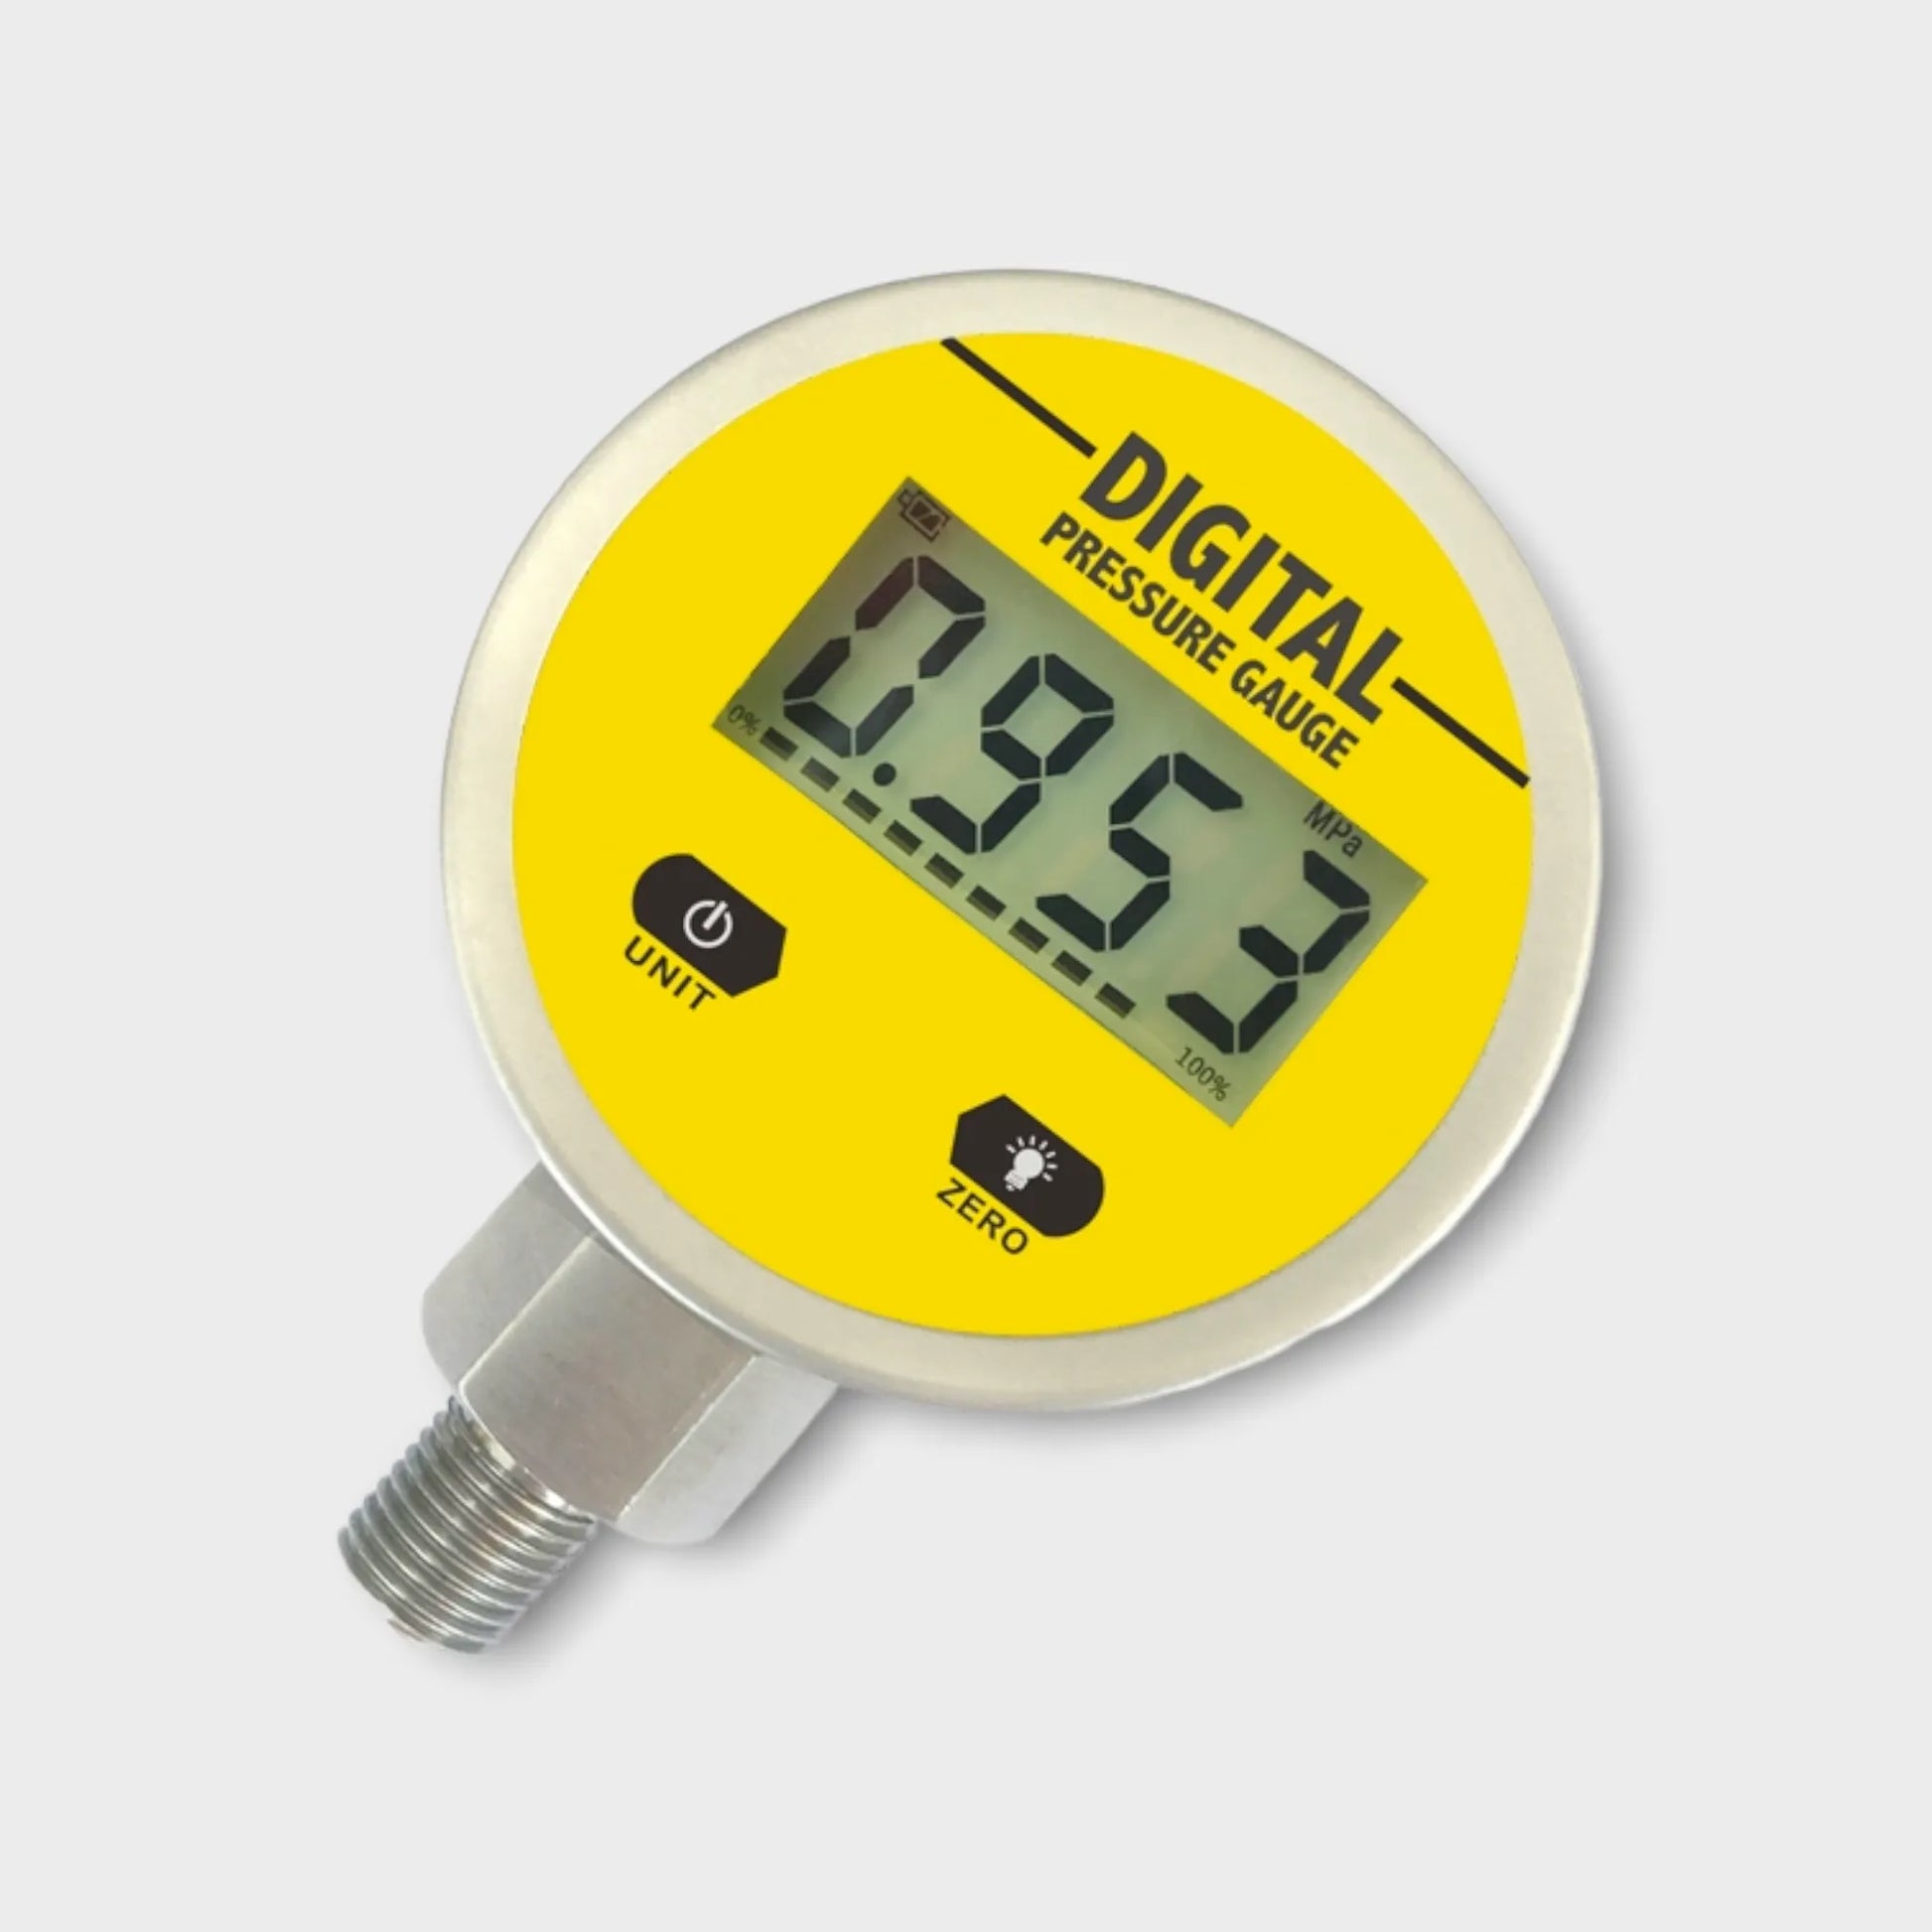 D260 Series Intelligent Digital Pressure Gauge